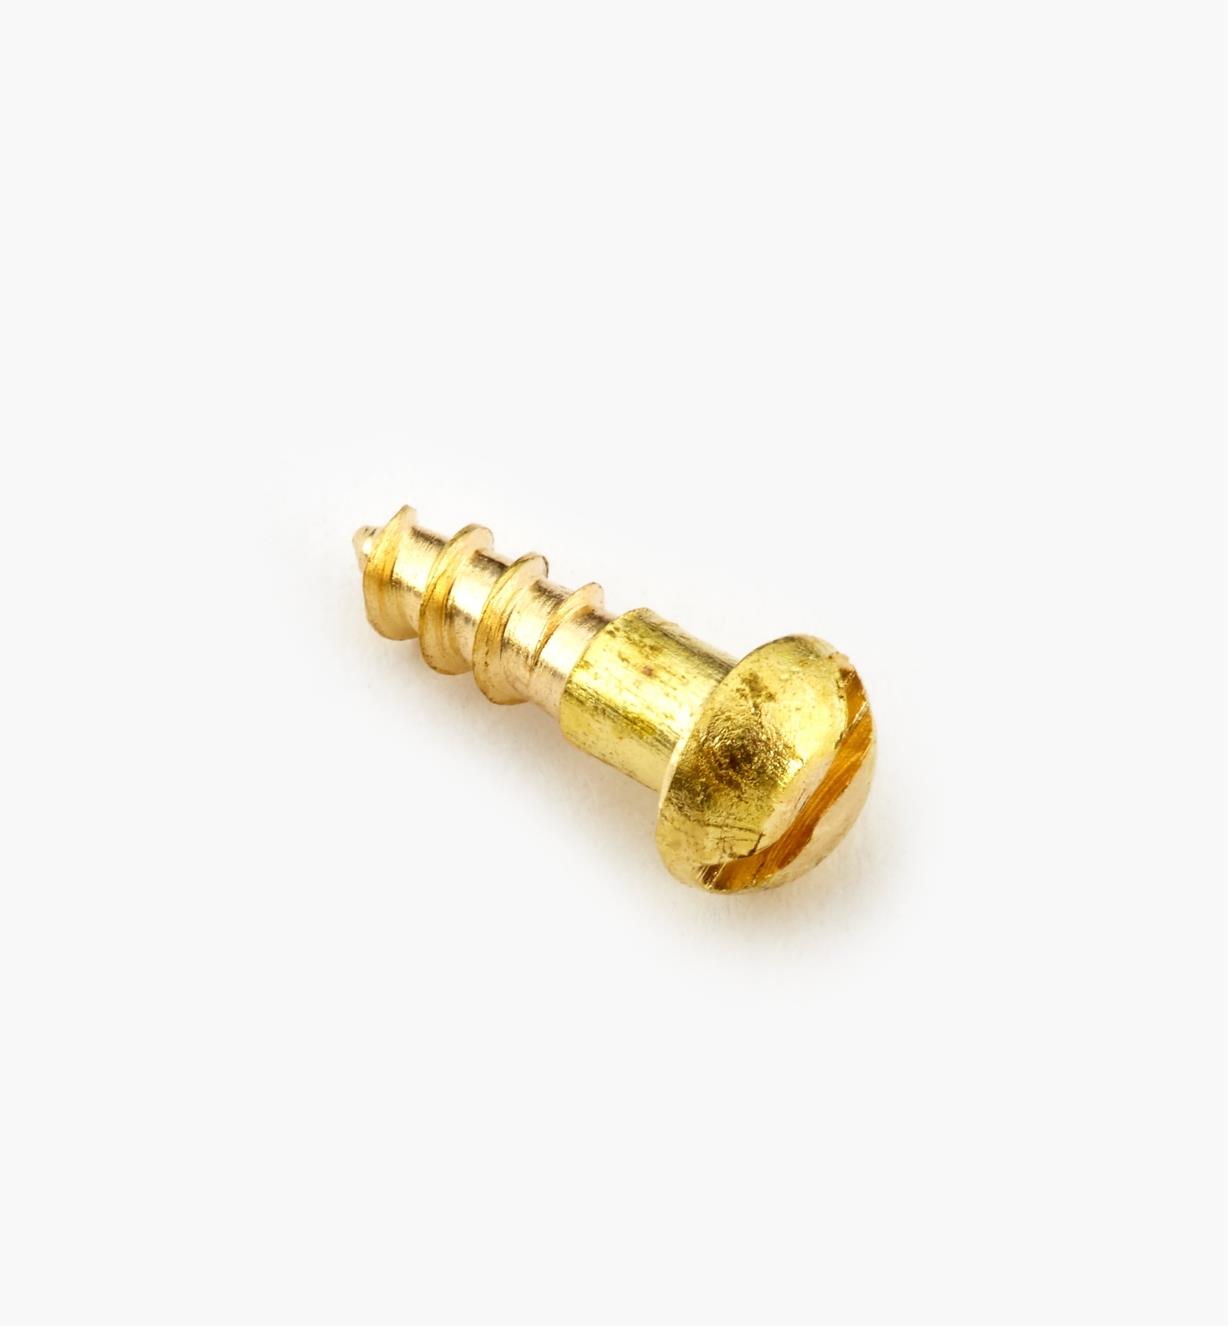 91Y0001 - #0, 1/4" Round Brass Screws, pkg. of 100